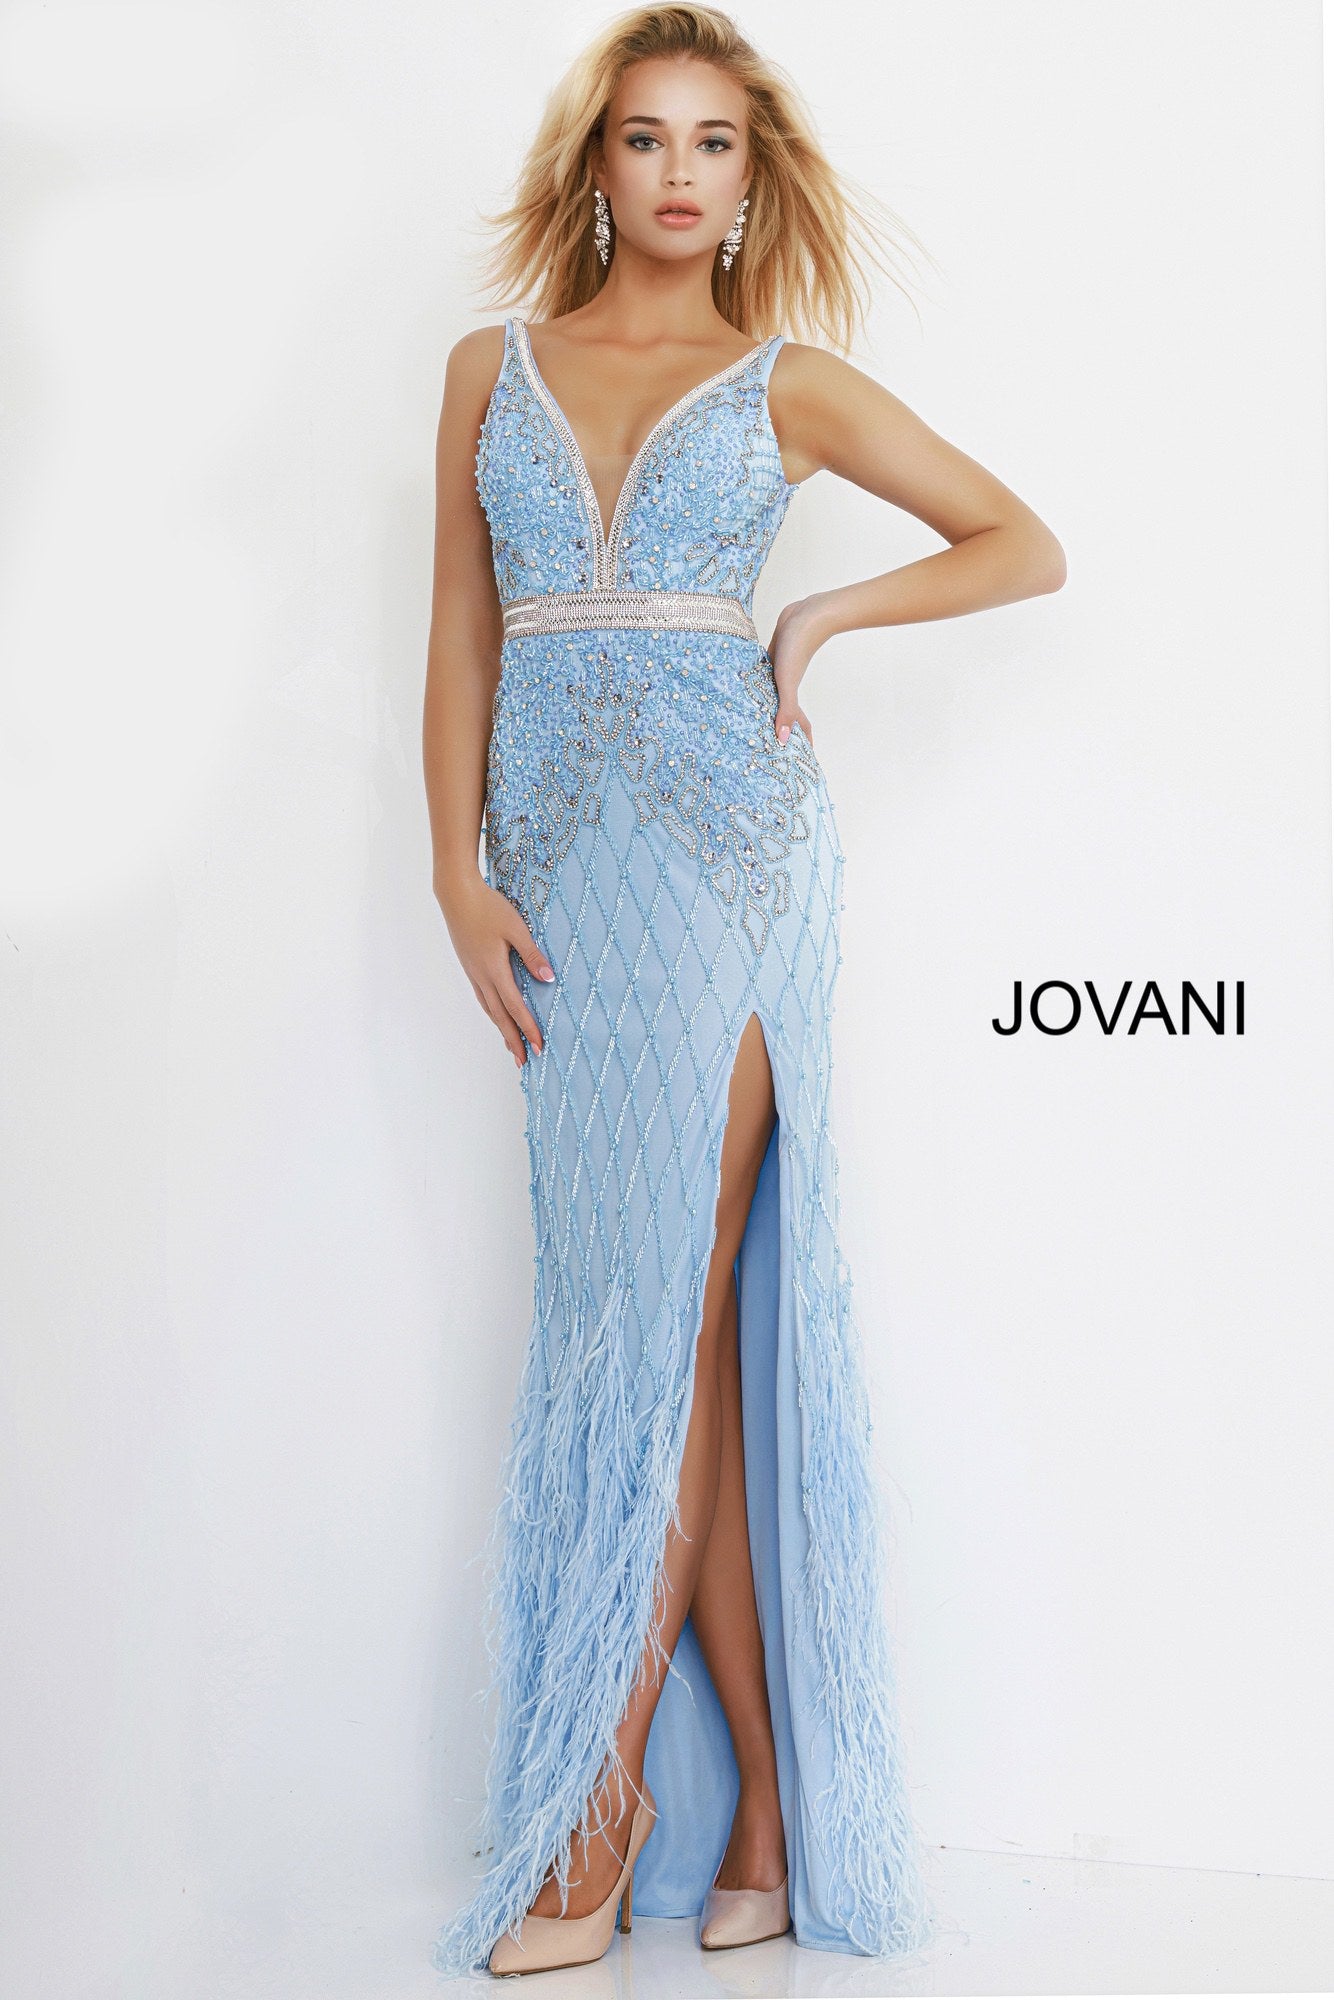 Jovani 55796 v neckline embellished prom dress with feather skirt ...